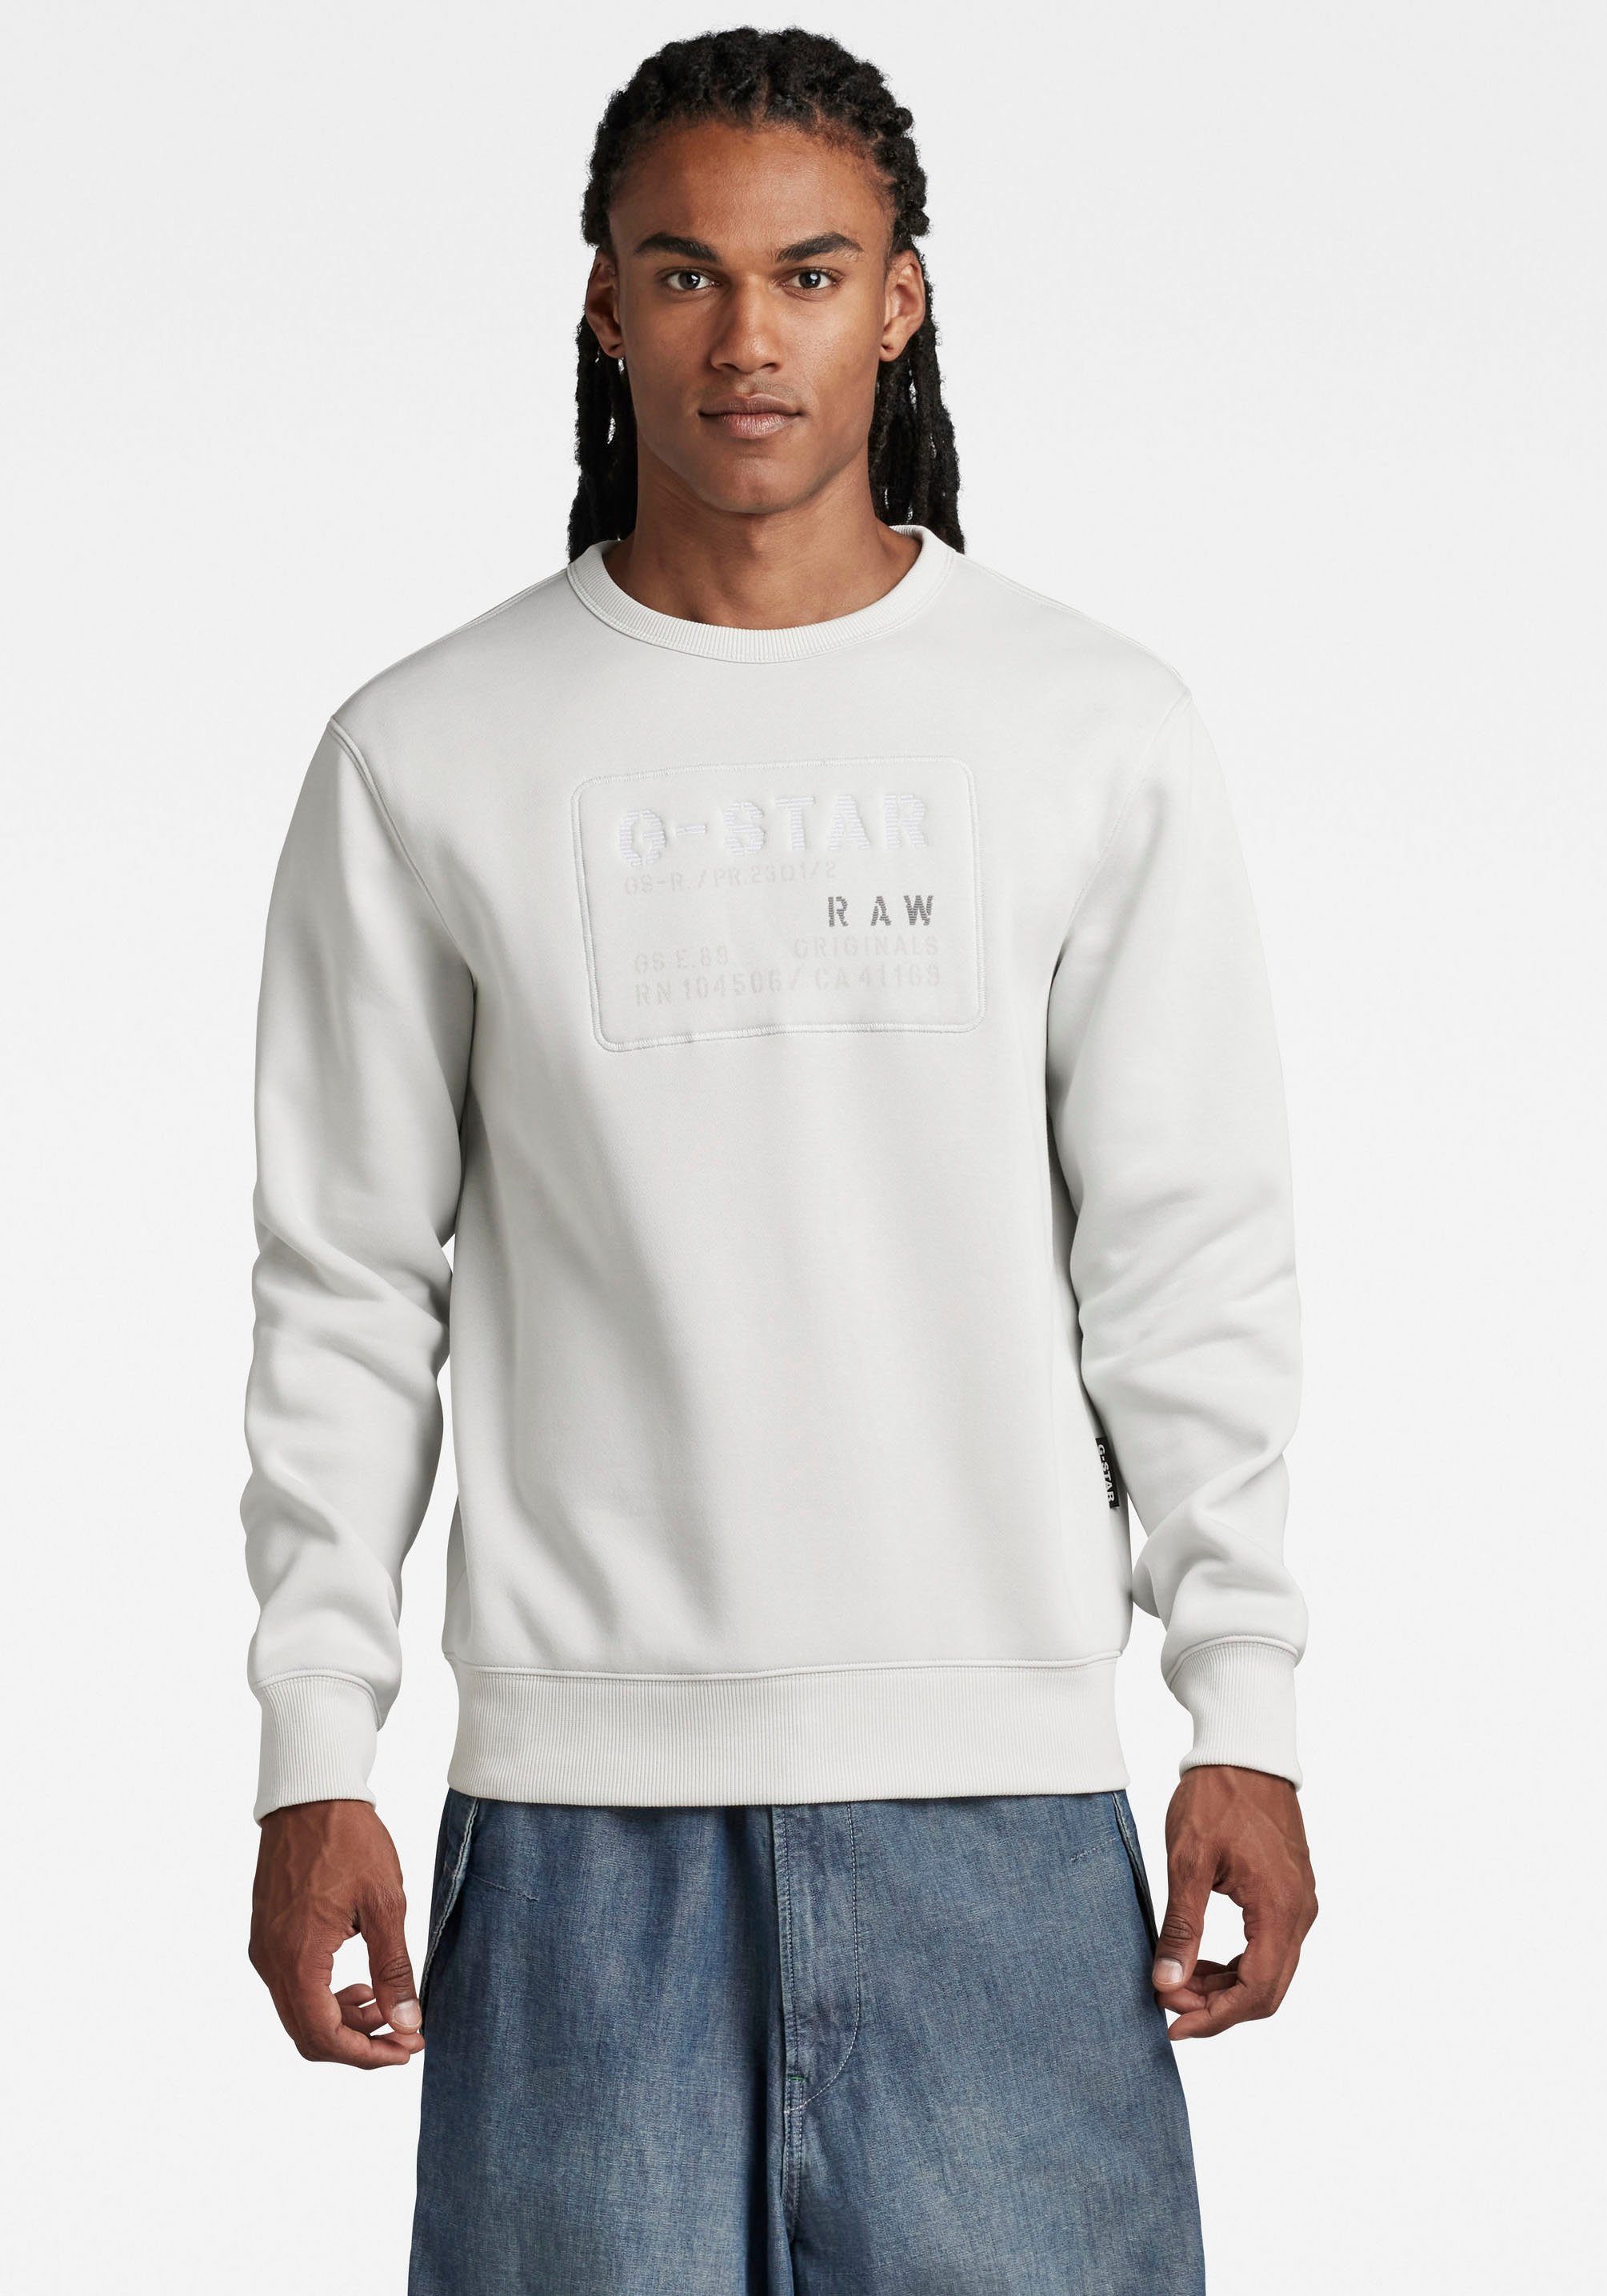 Kind concept Ontstaan G-Star RAW Sweatshirt Originals makkelijk gekocht | OTTO